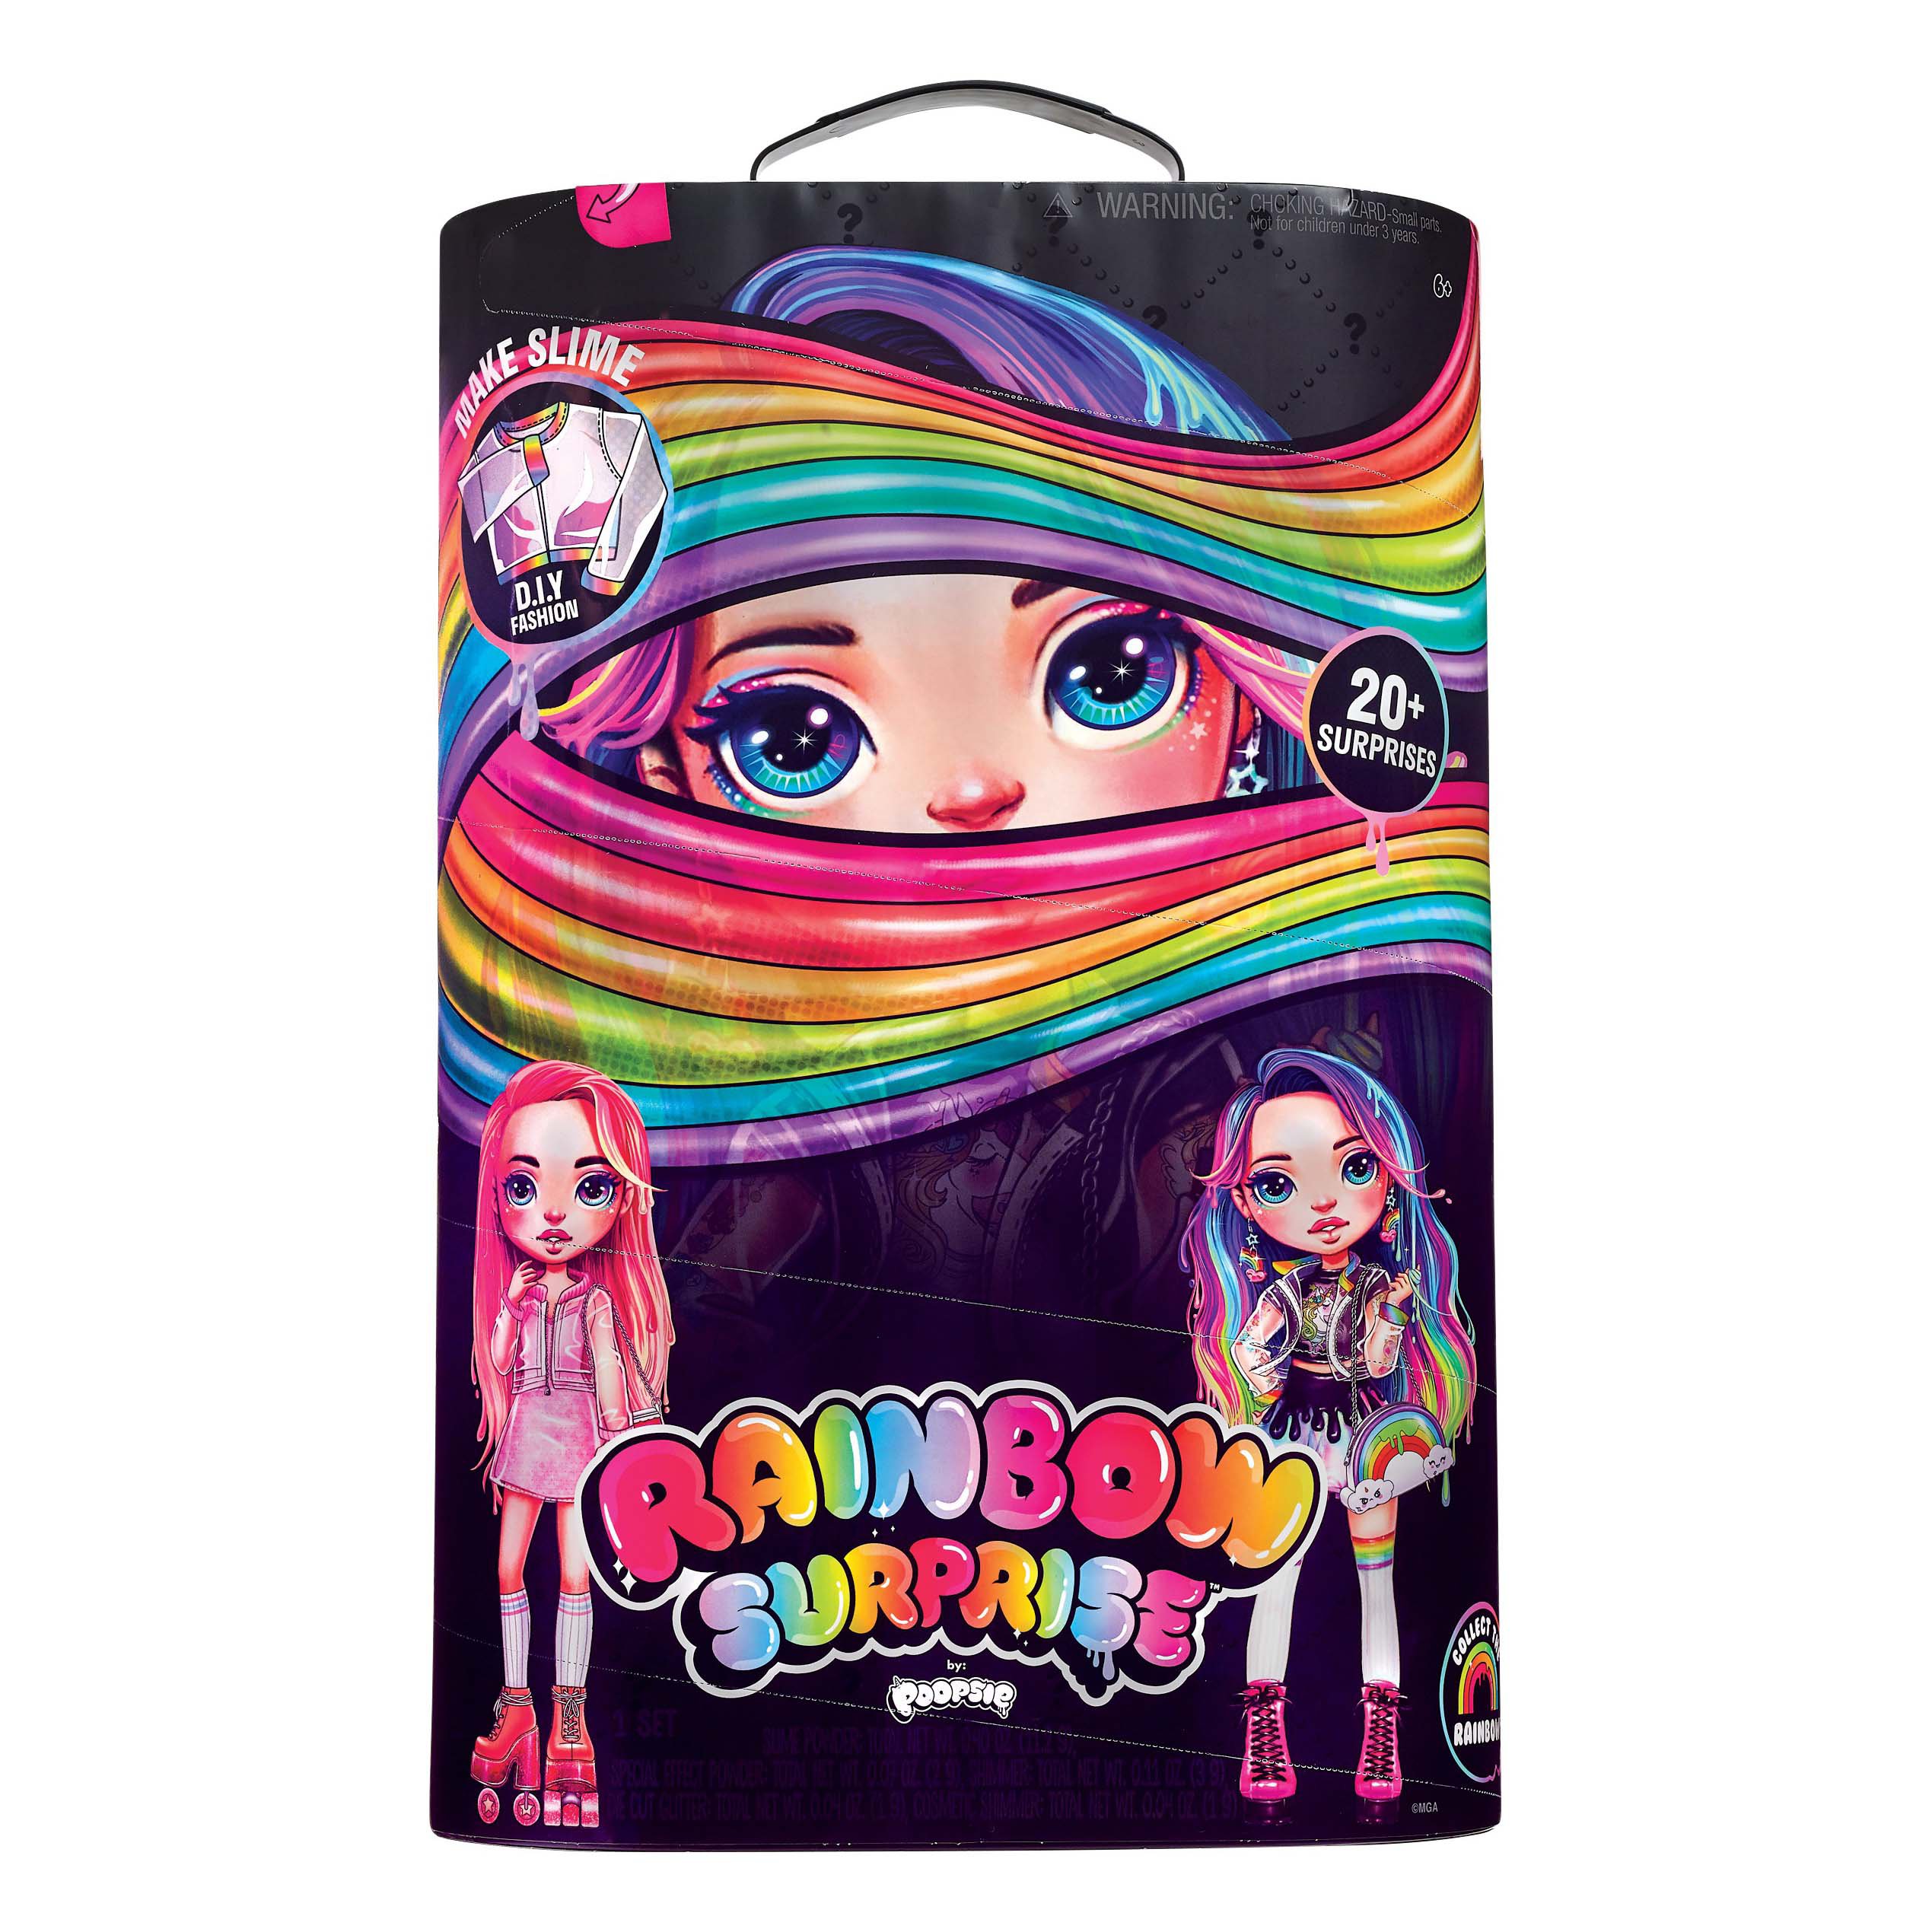 poopsie rainbow surprise doll